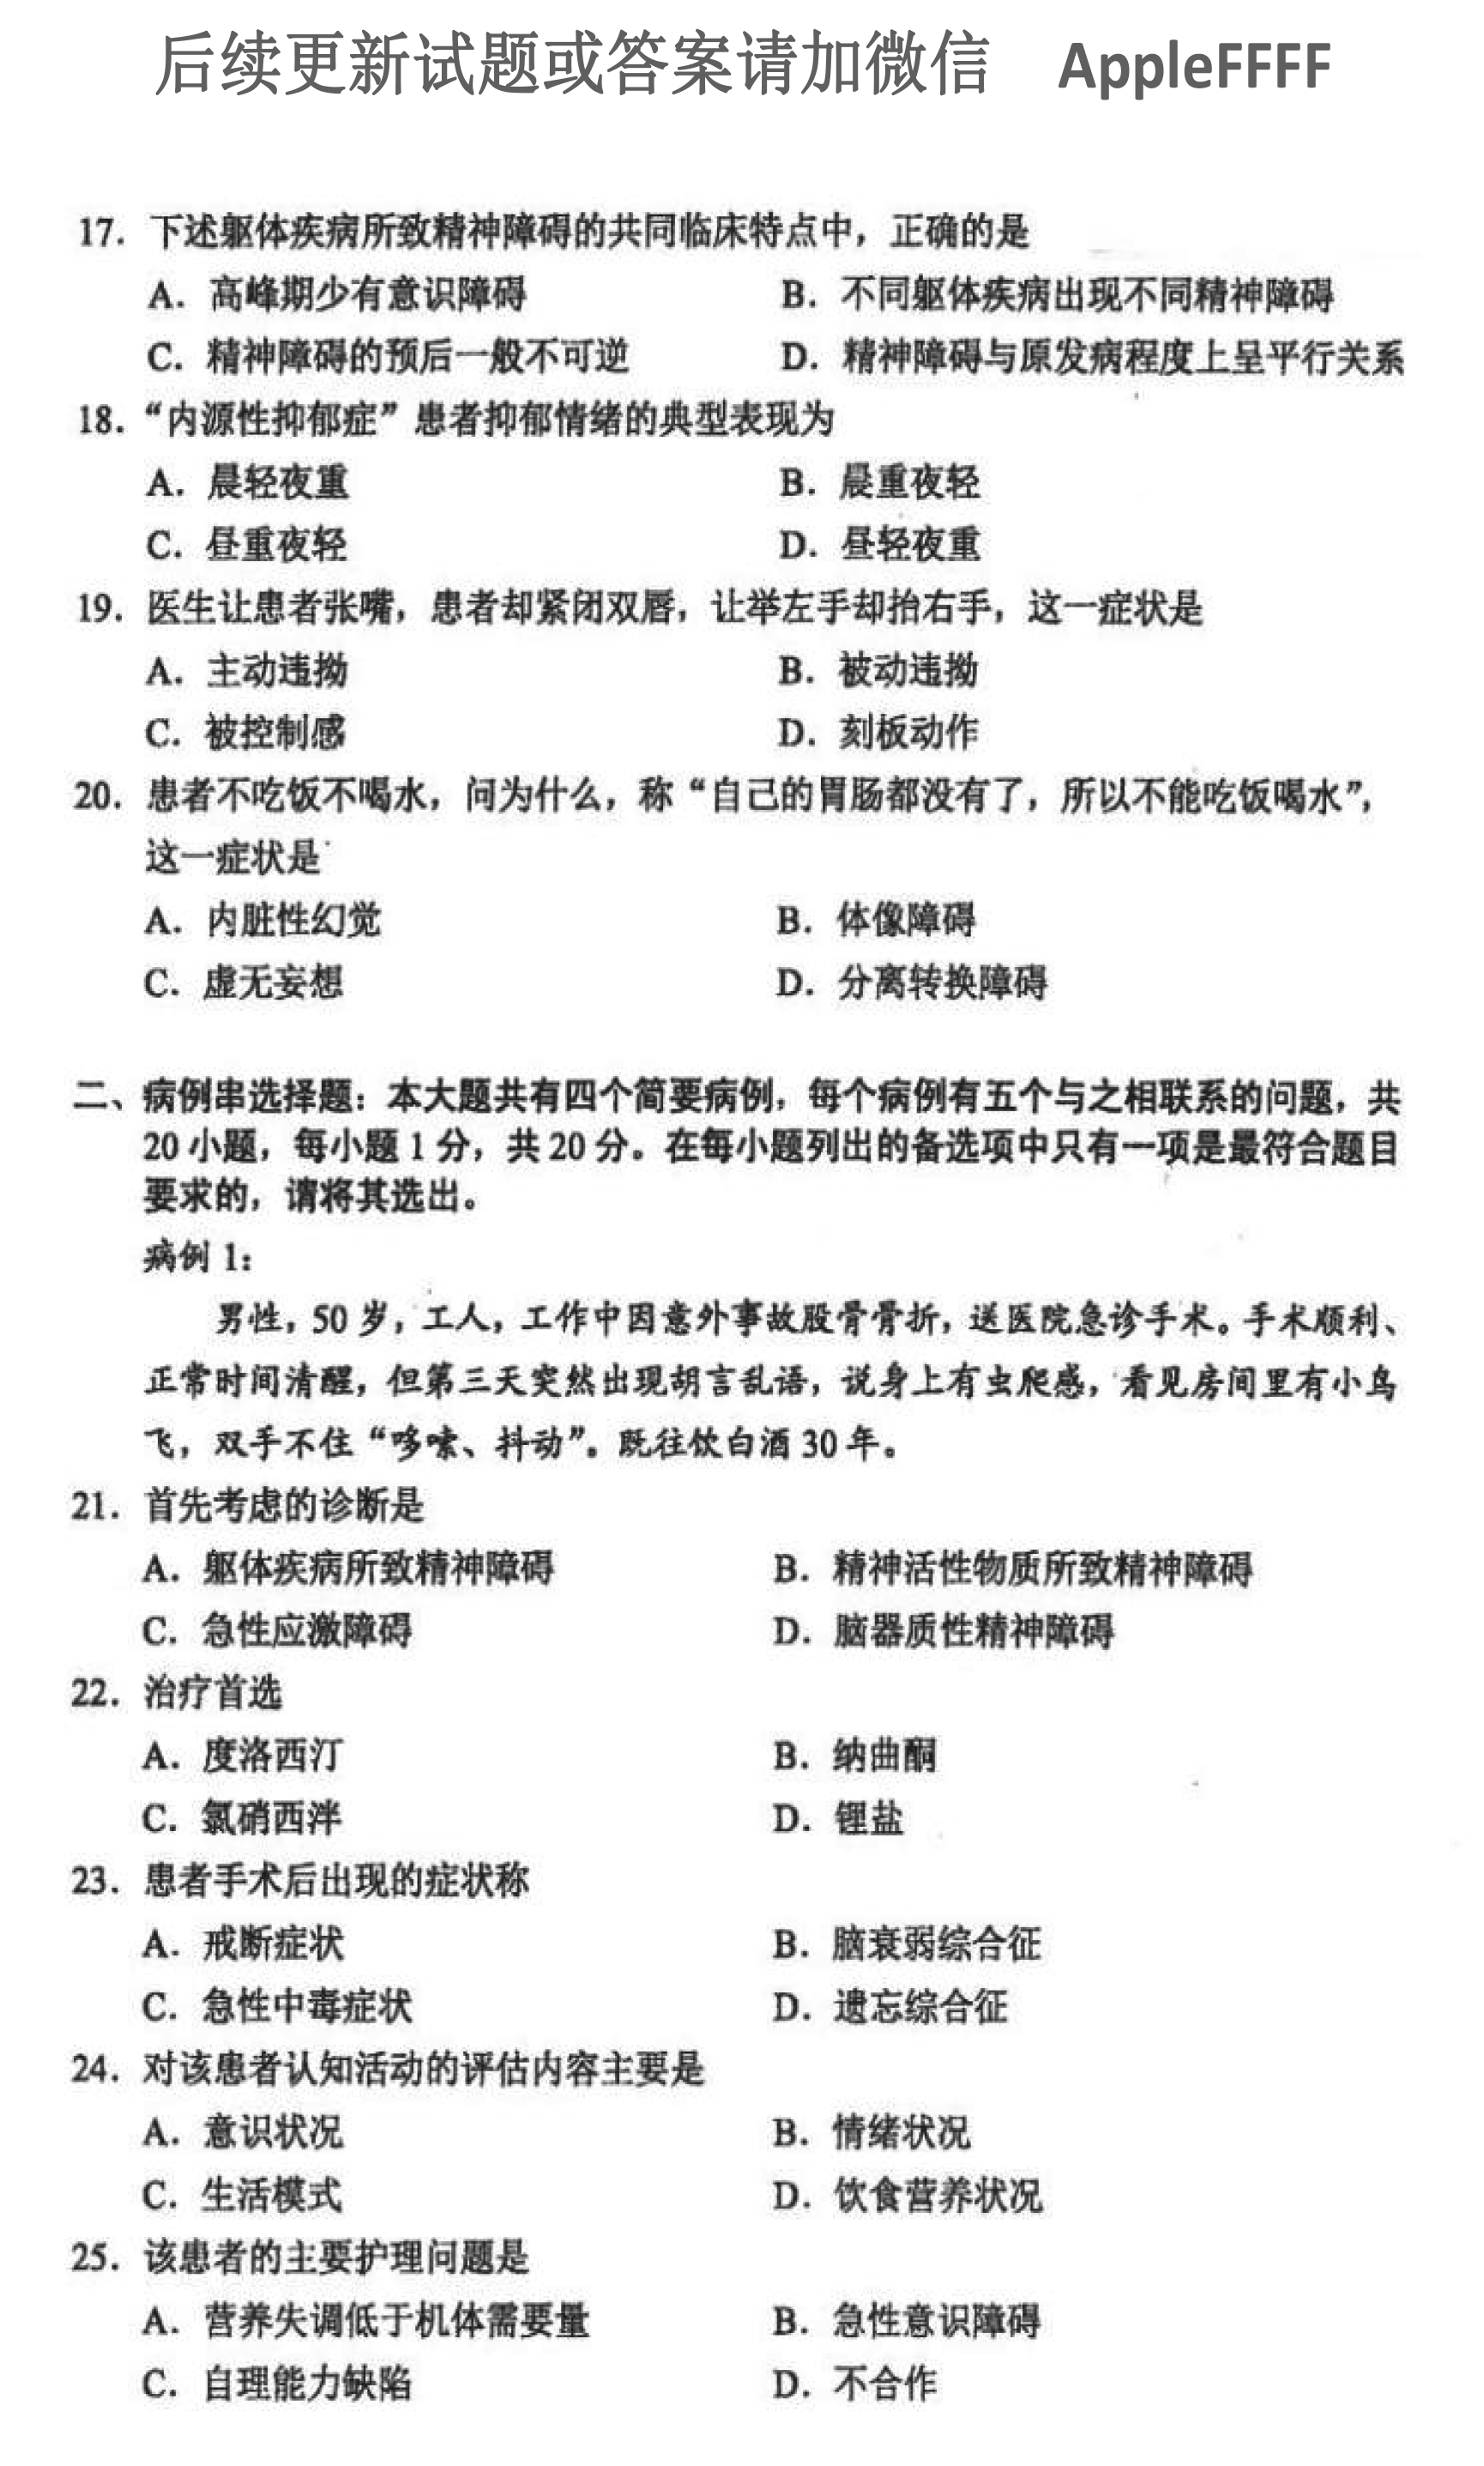 2021年10月贵州省自学考试03009精神障碍护理学